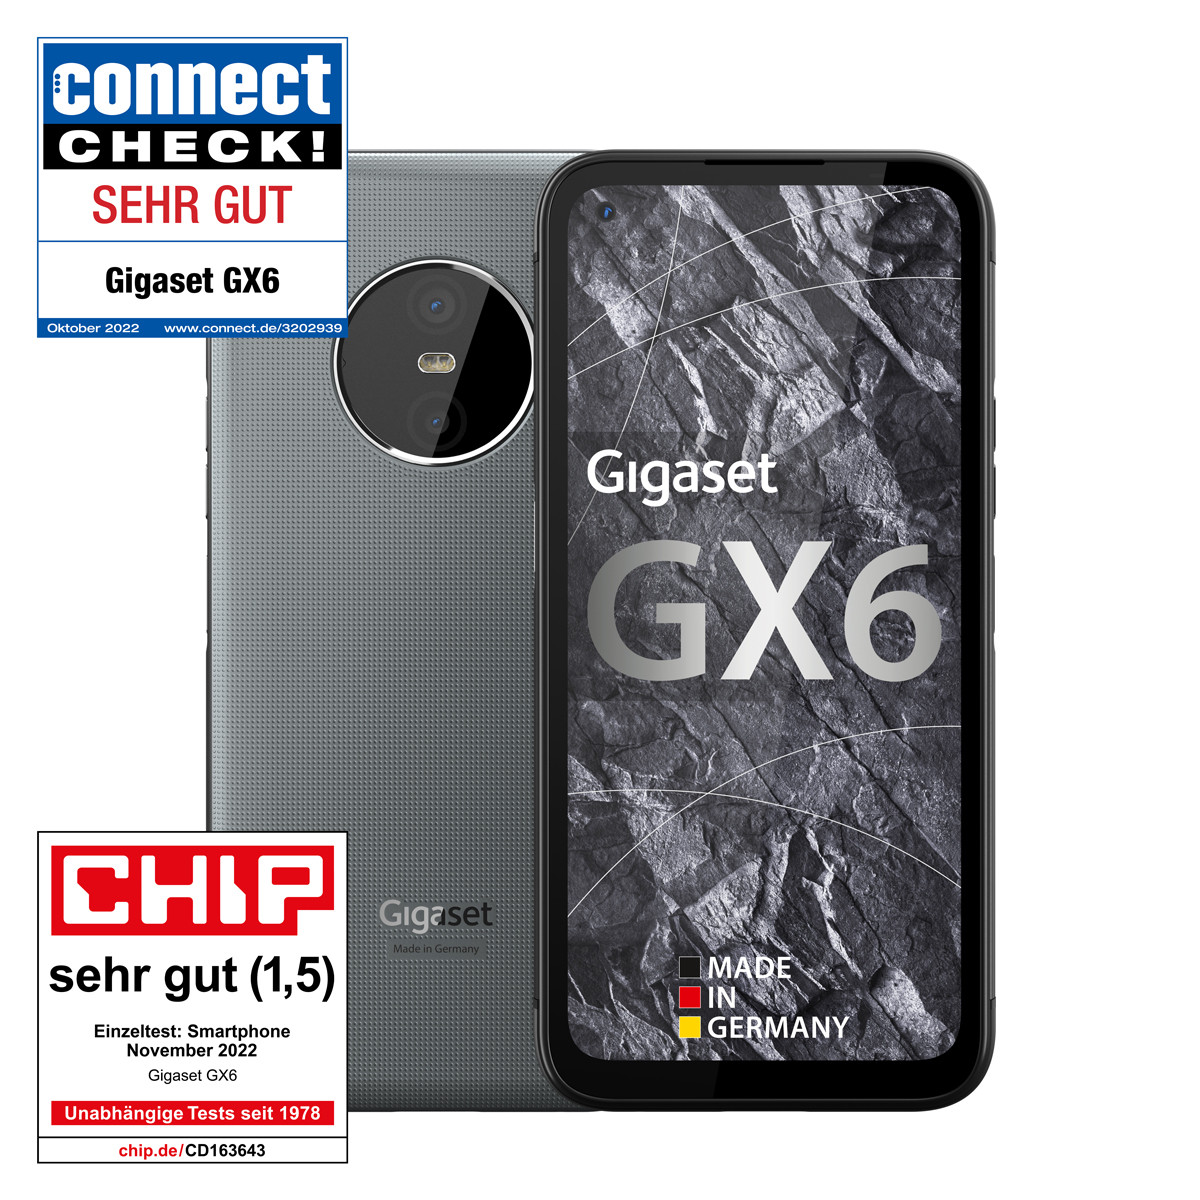 kaufen 5G online edelste GX6 Das Gigaset | Outdoor-Smartphone Gigaset